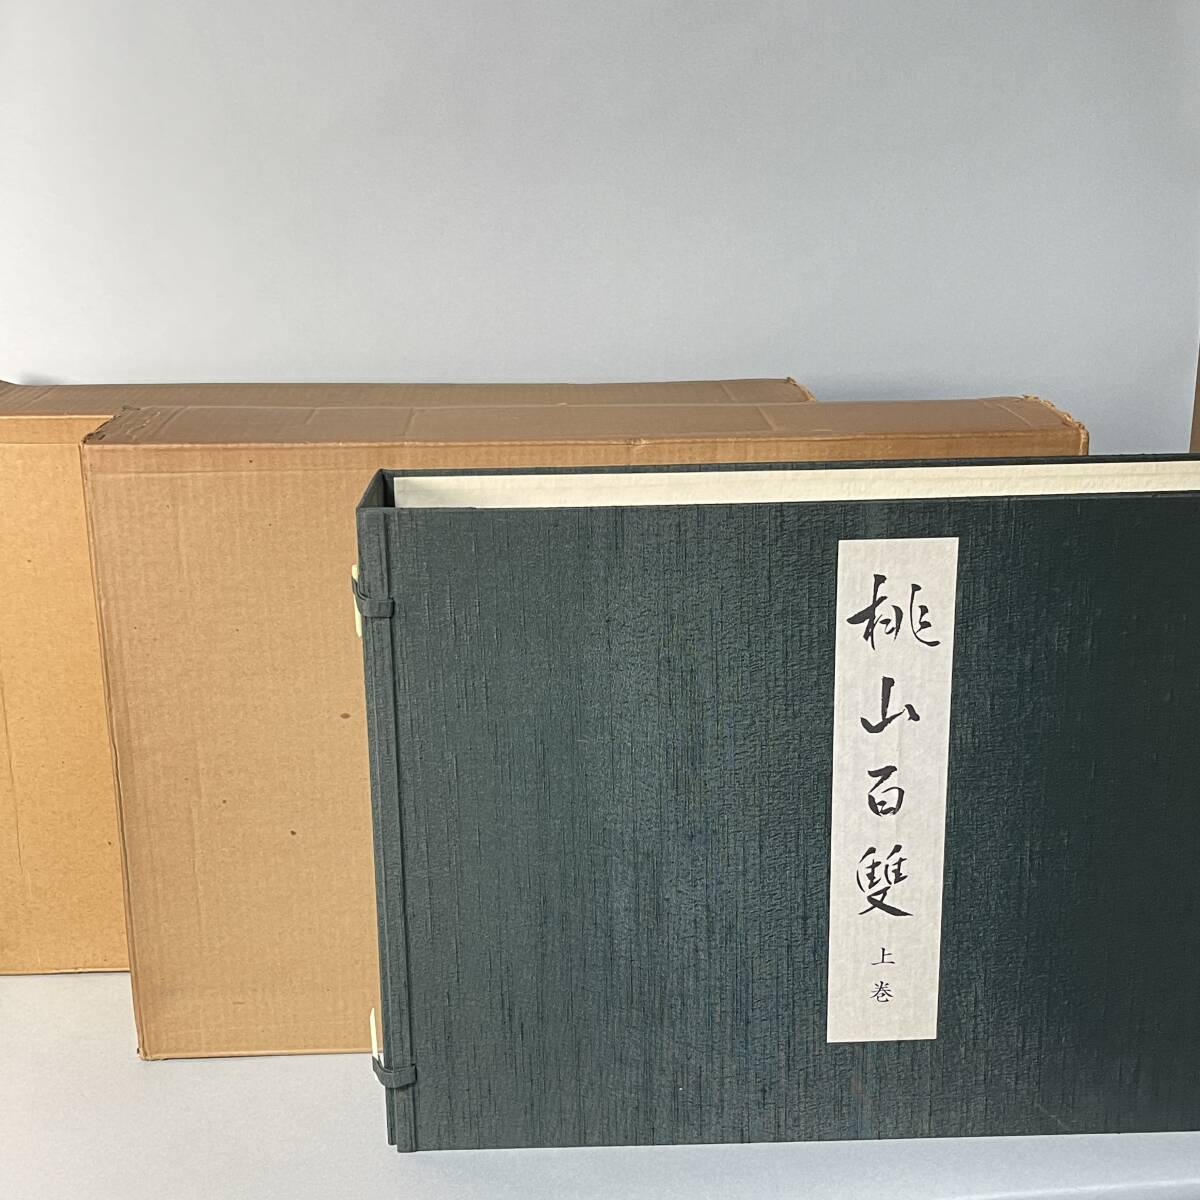 Momoyama Hyakusou Volumes 1 et 2 Grand catalogue de livres Limité à 500 exemplaires Fuji Art Publié en 1975 Château de Fushimi Château de Momoyama Peinture sur paravent 300, 000 yens Momoyama Hyakusou B3, Peinture, Livre d'art, Collection, Catalogue